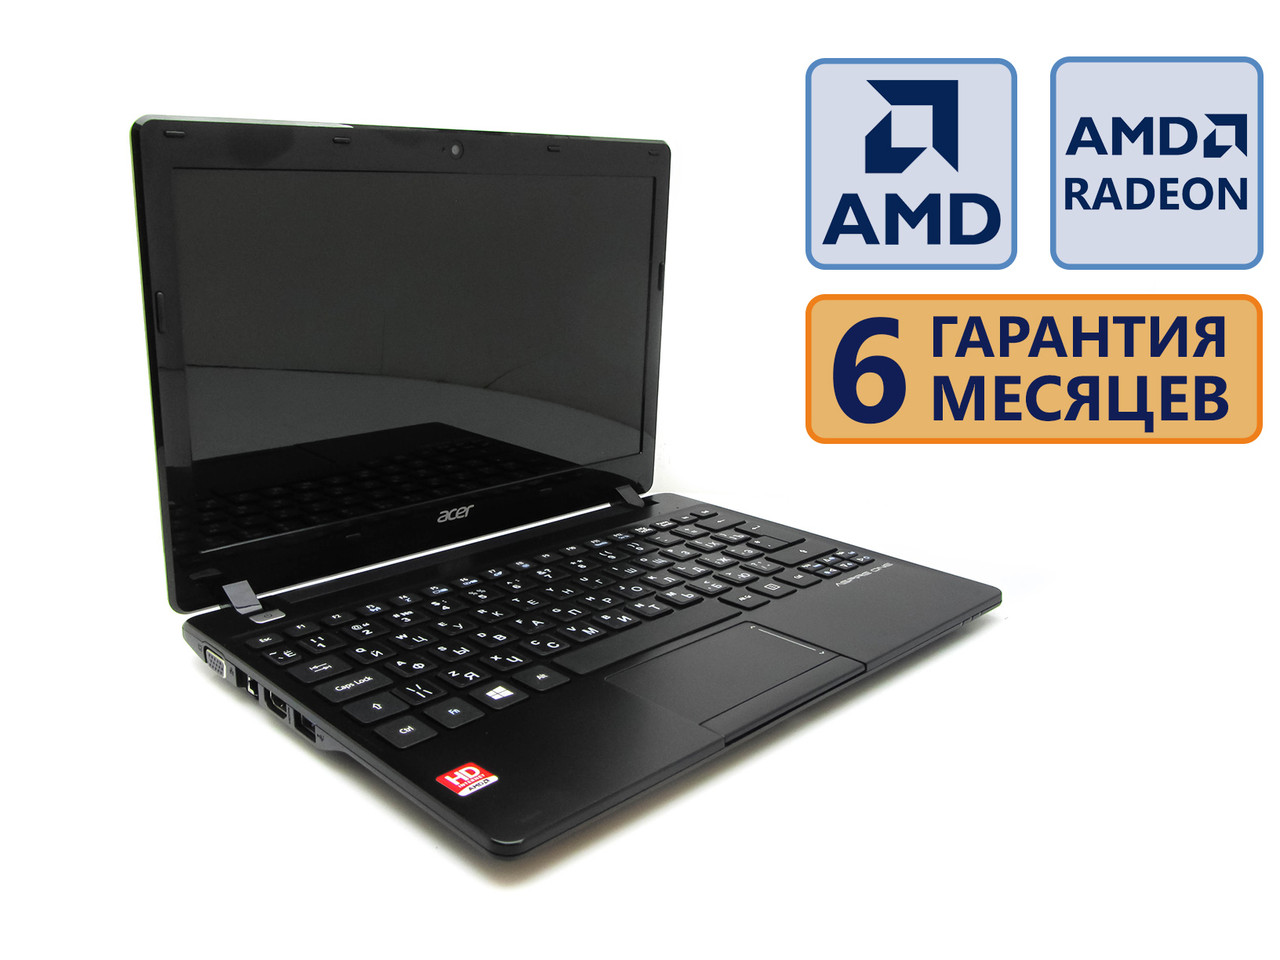 Ноутбук Acer Aspire One 725 11.6 (1366x768)/ AMD C-70 (2x1.33GHz)/ Int: 1  900 грн. - Ноутбуки Днепр на BESPLATKA.ua 88810527